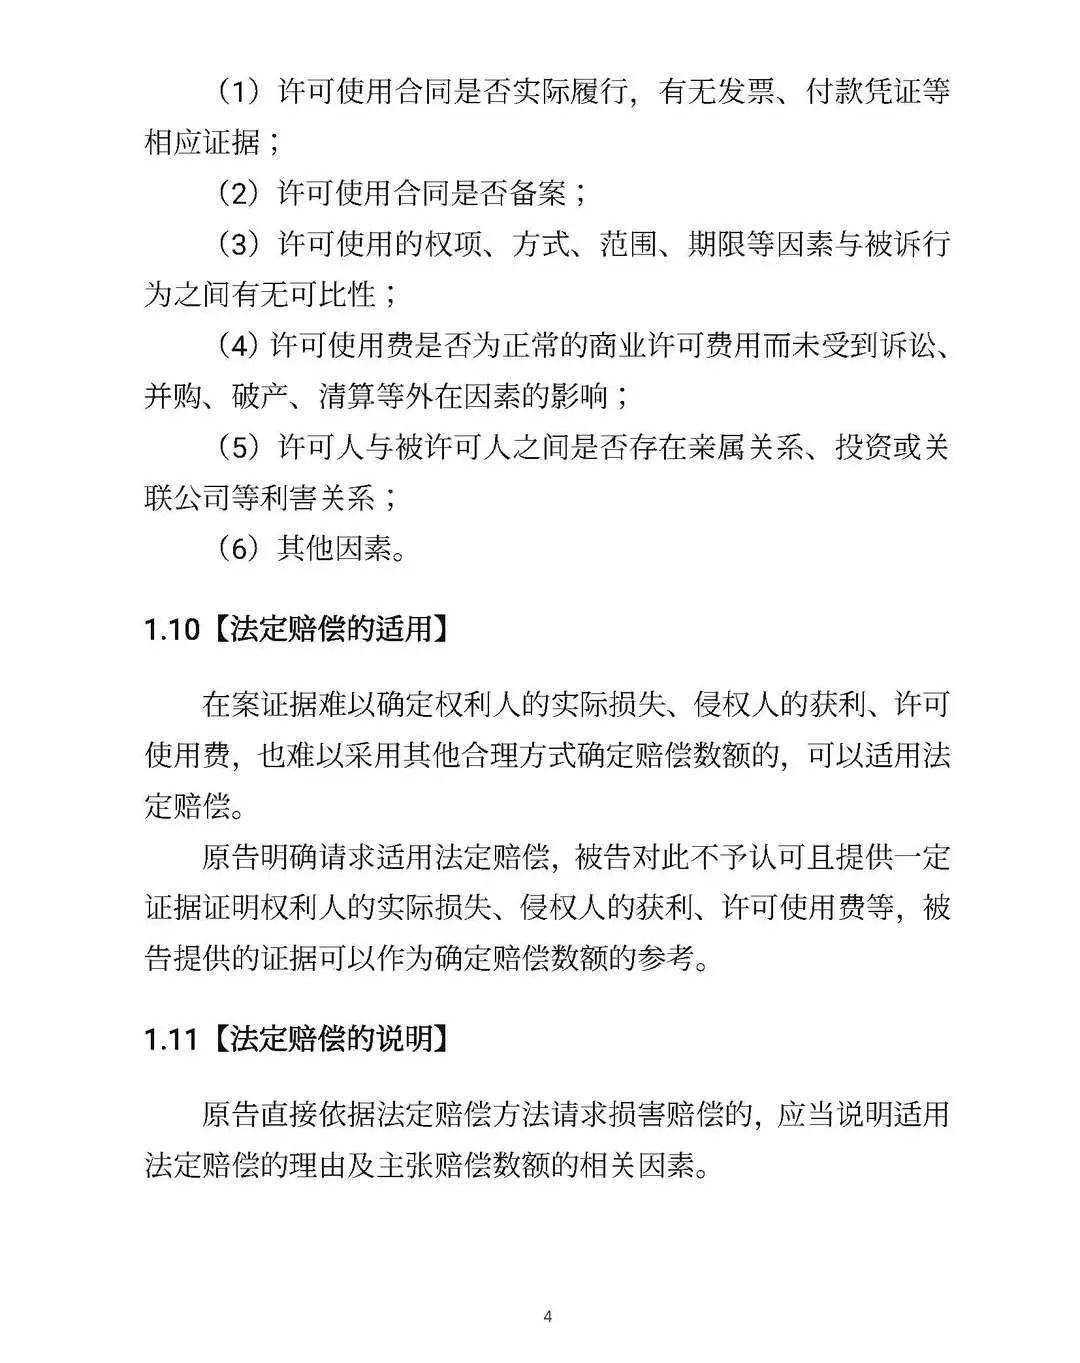 全文｜北京高院明确侵害知识产权案件赔偿裁判标准